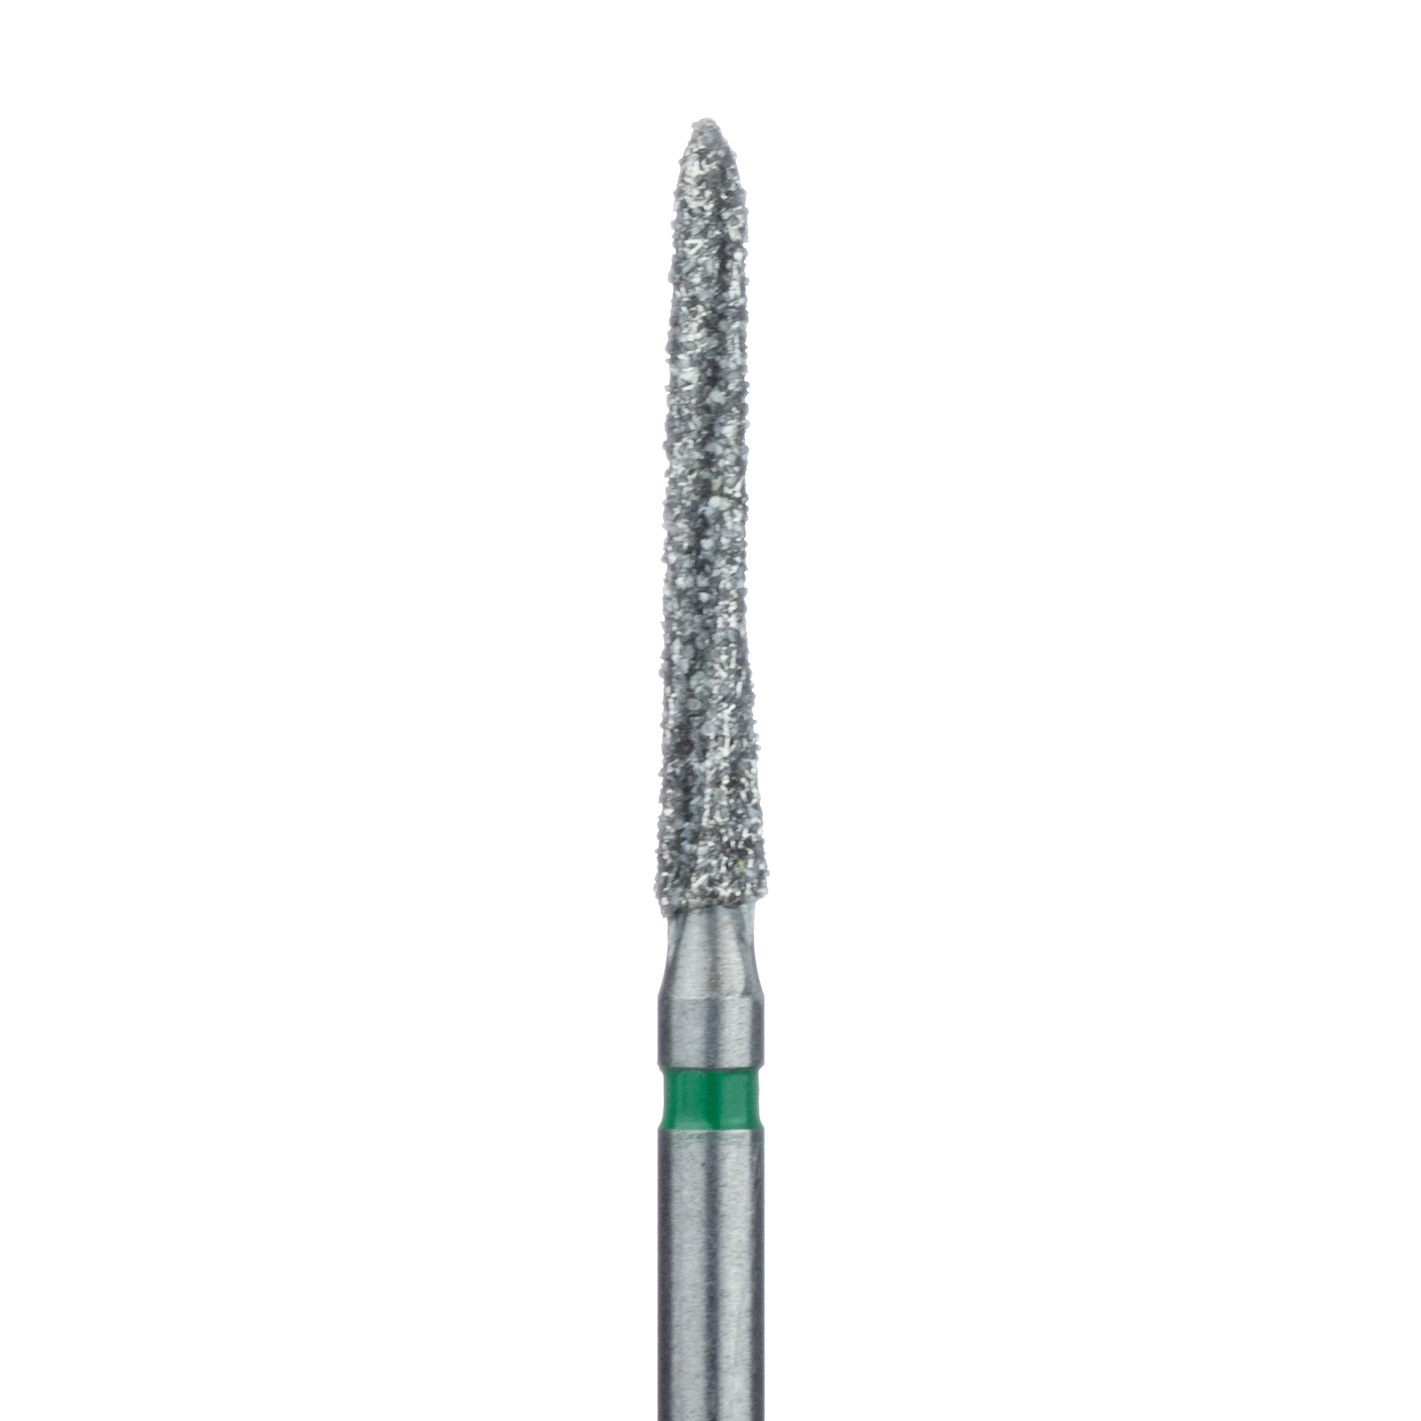 411G-016-FGL Diamond Bur, Surgical, Lindemann, 1.6mm Ø, FGL